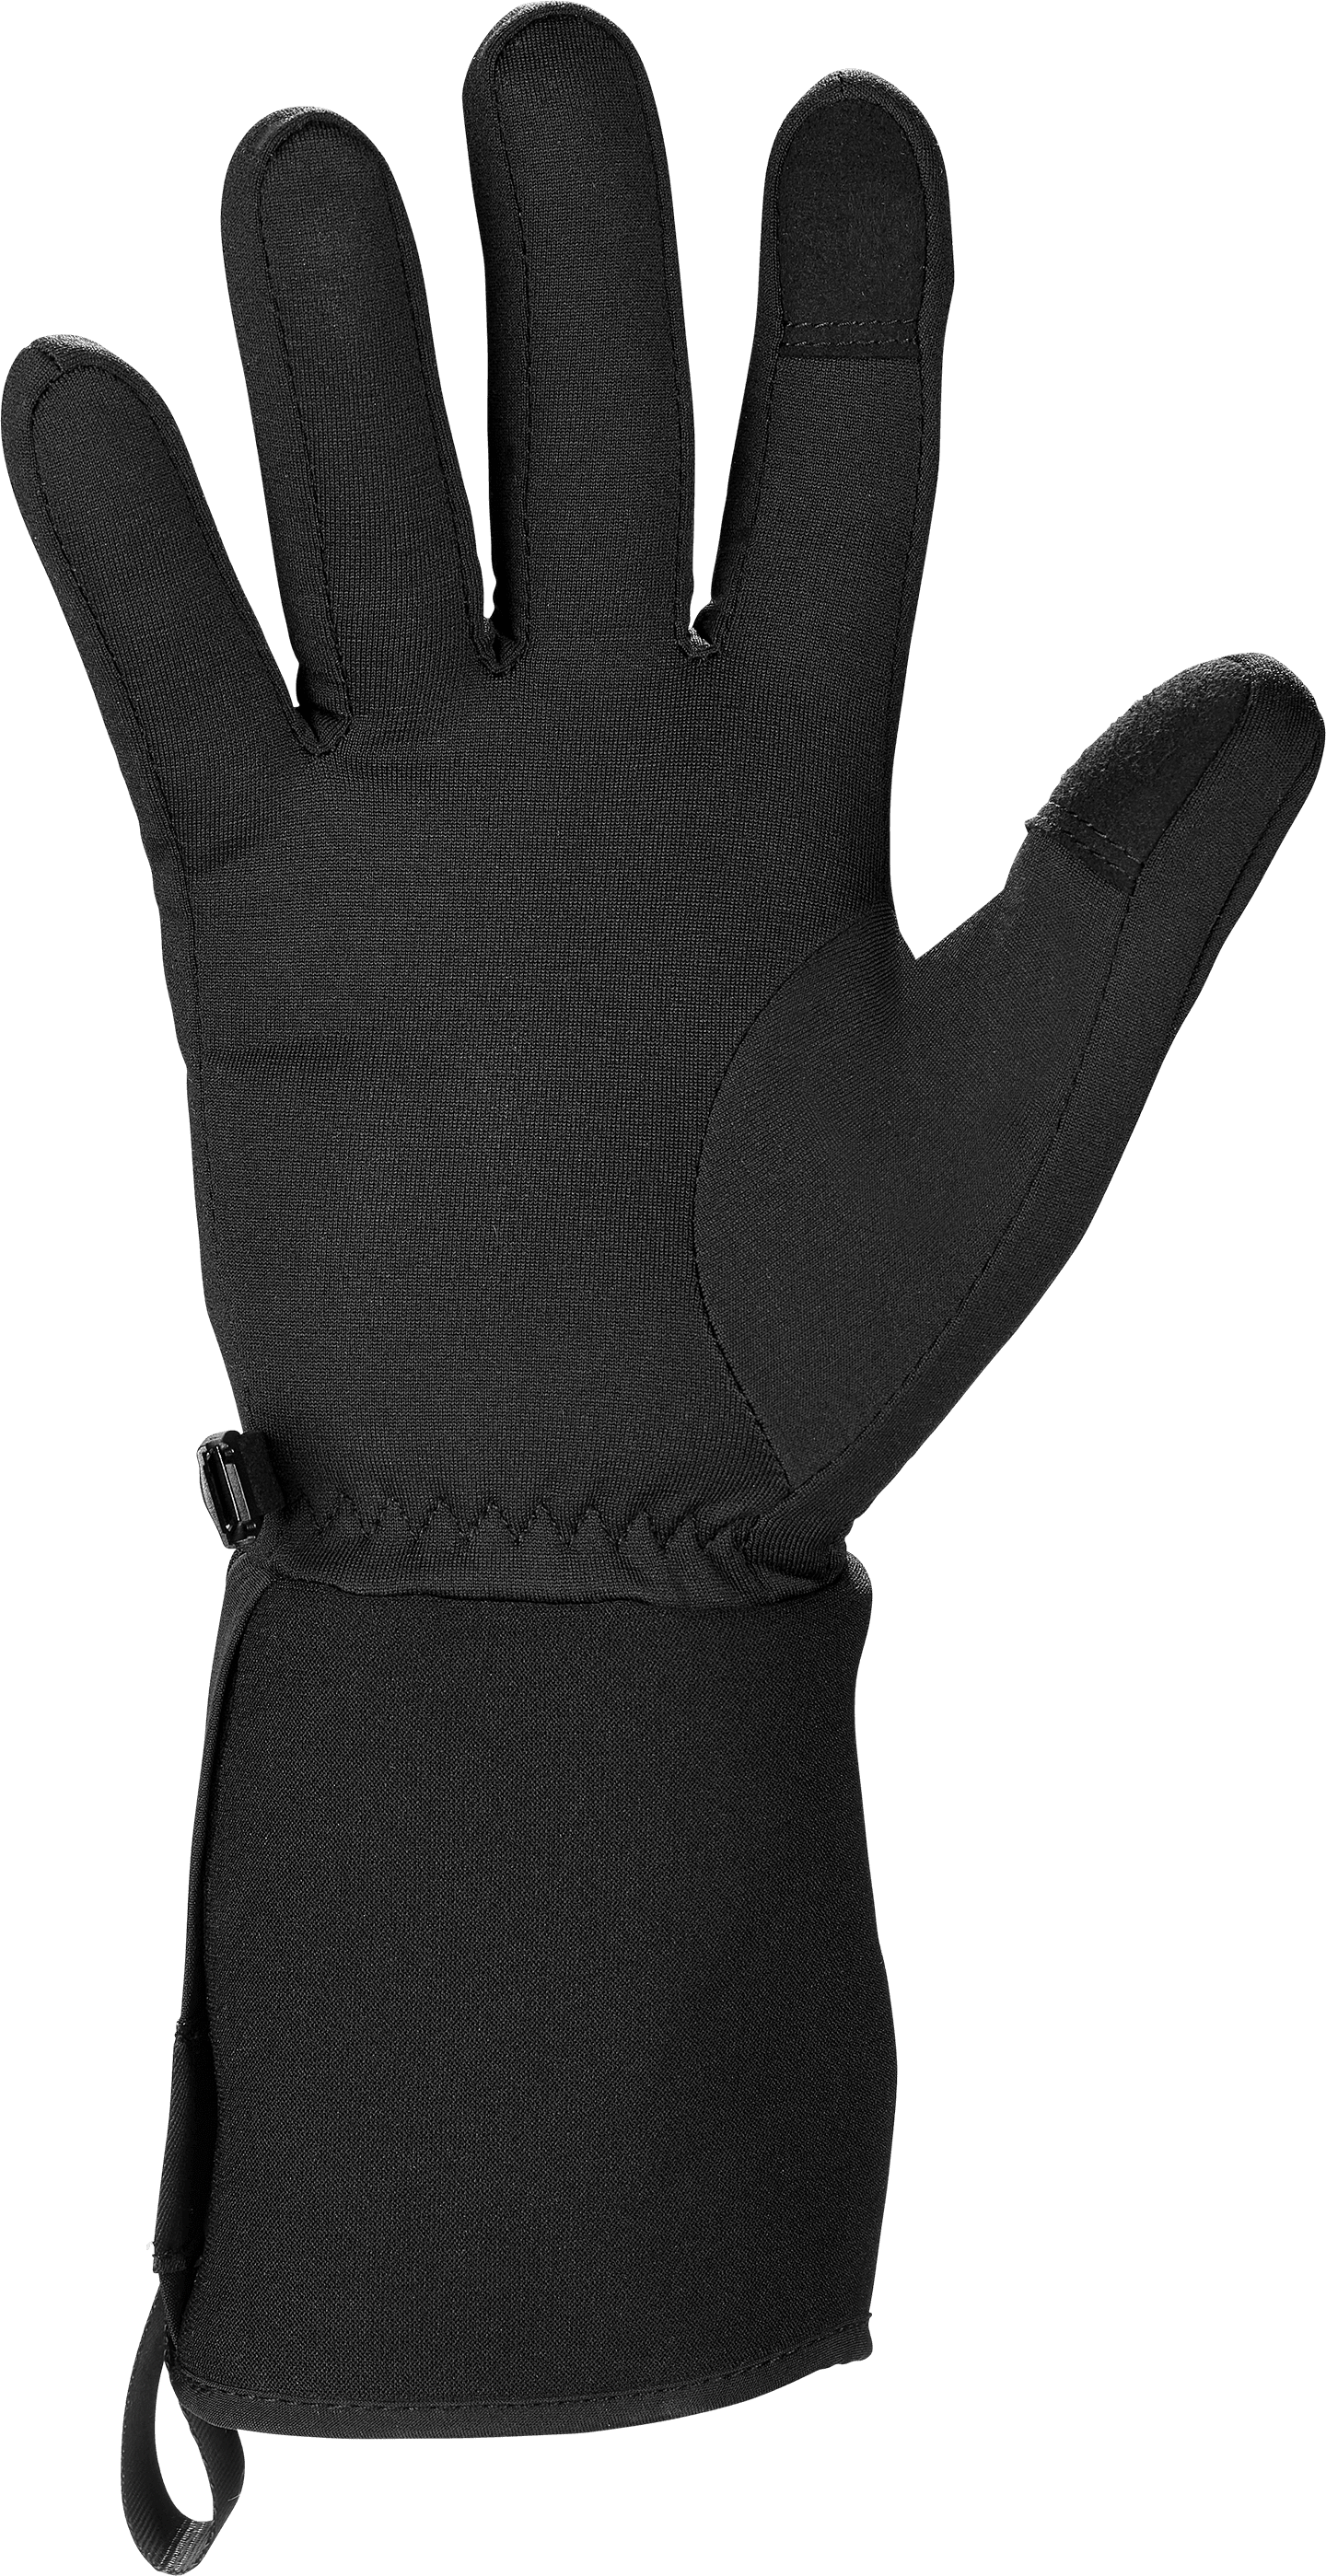 ewool-glove-power